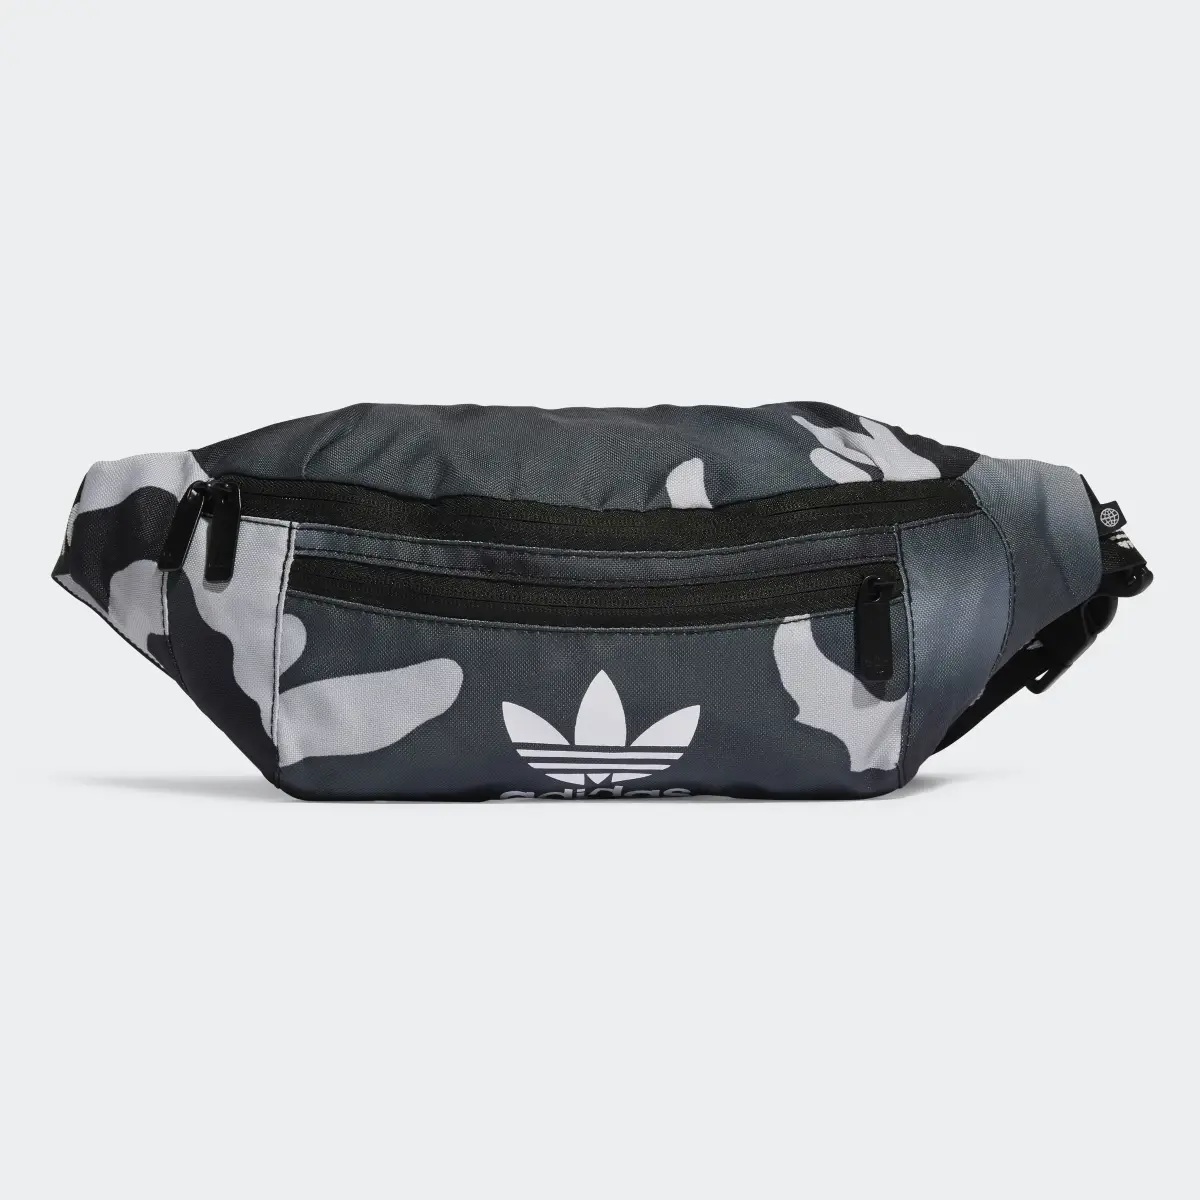 Adidas Camo Waist Bag. 2